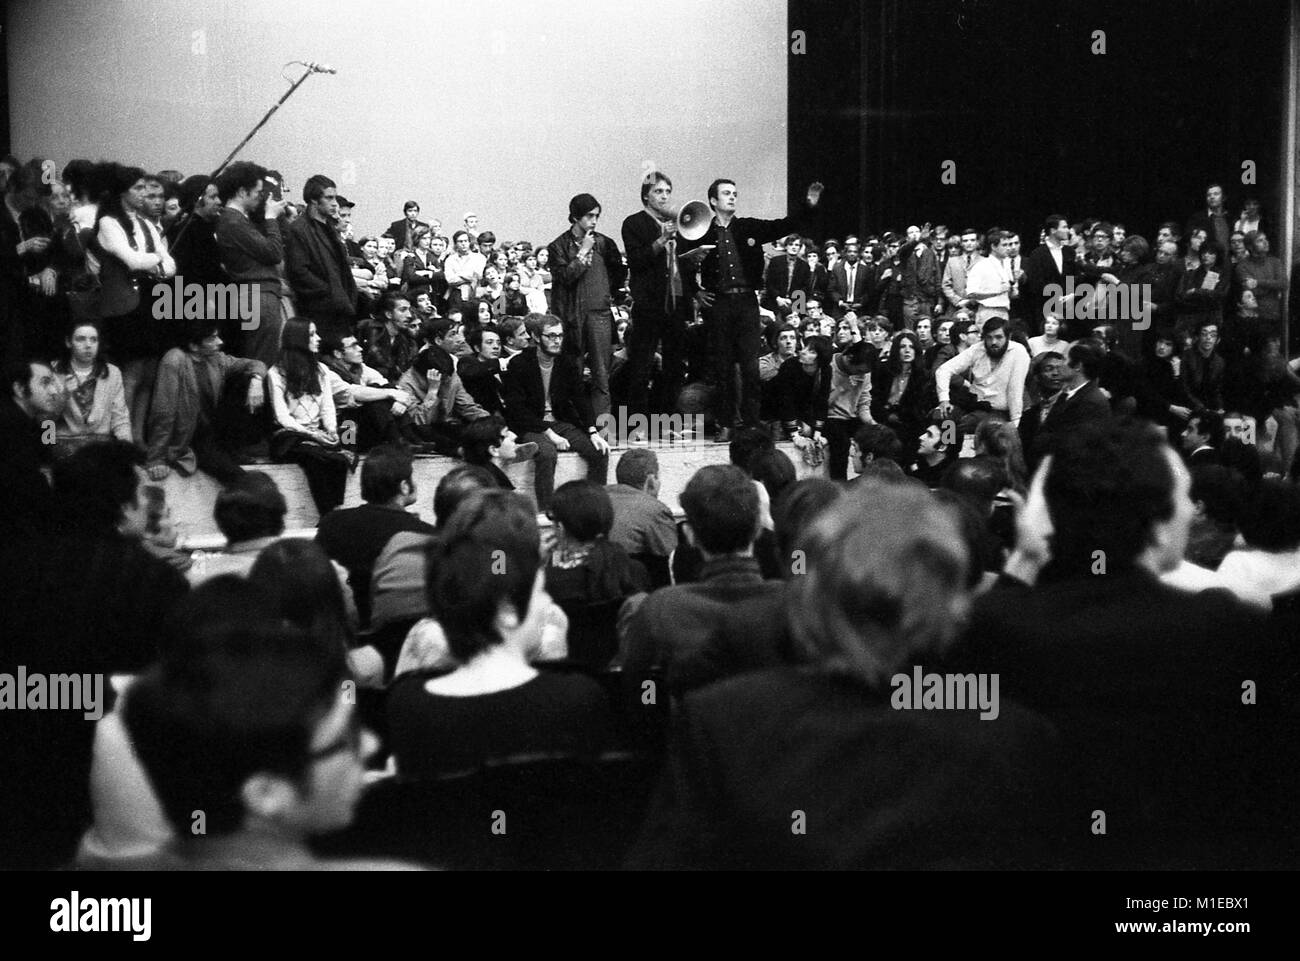 Philippe Gras / Le Pictorium - 68 de Mayo - 1968 - Francia / Ile-de-France (región) / Paris - Rally Teatro Odeon, 1968 Foto de stock